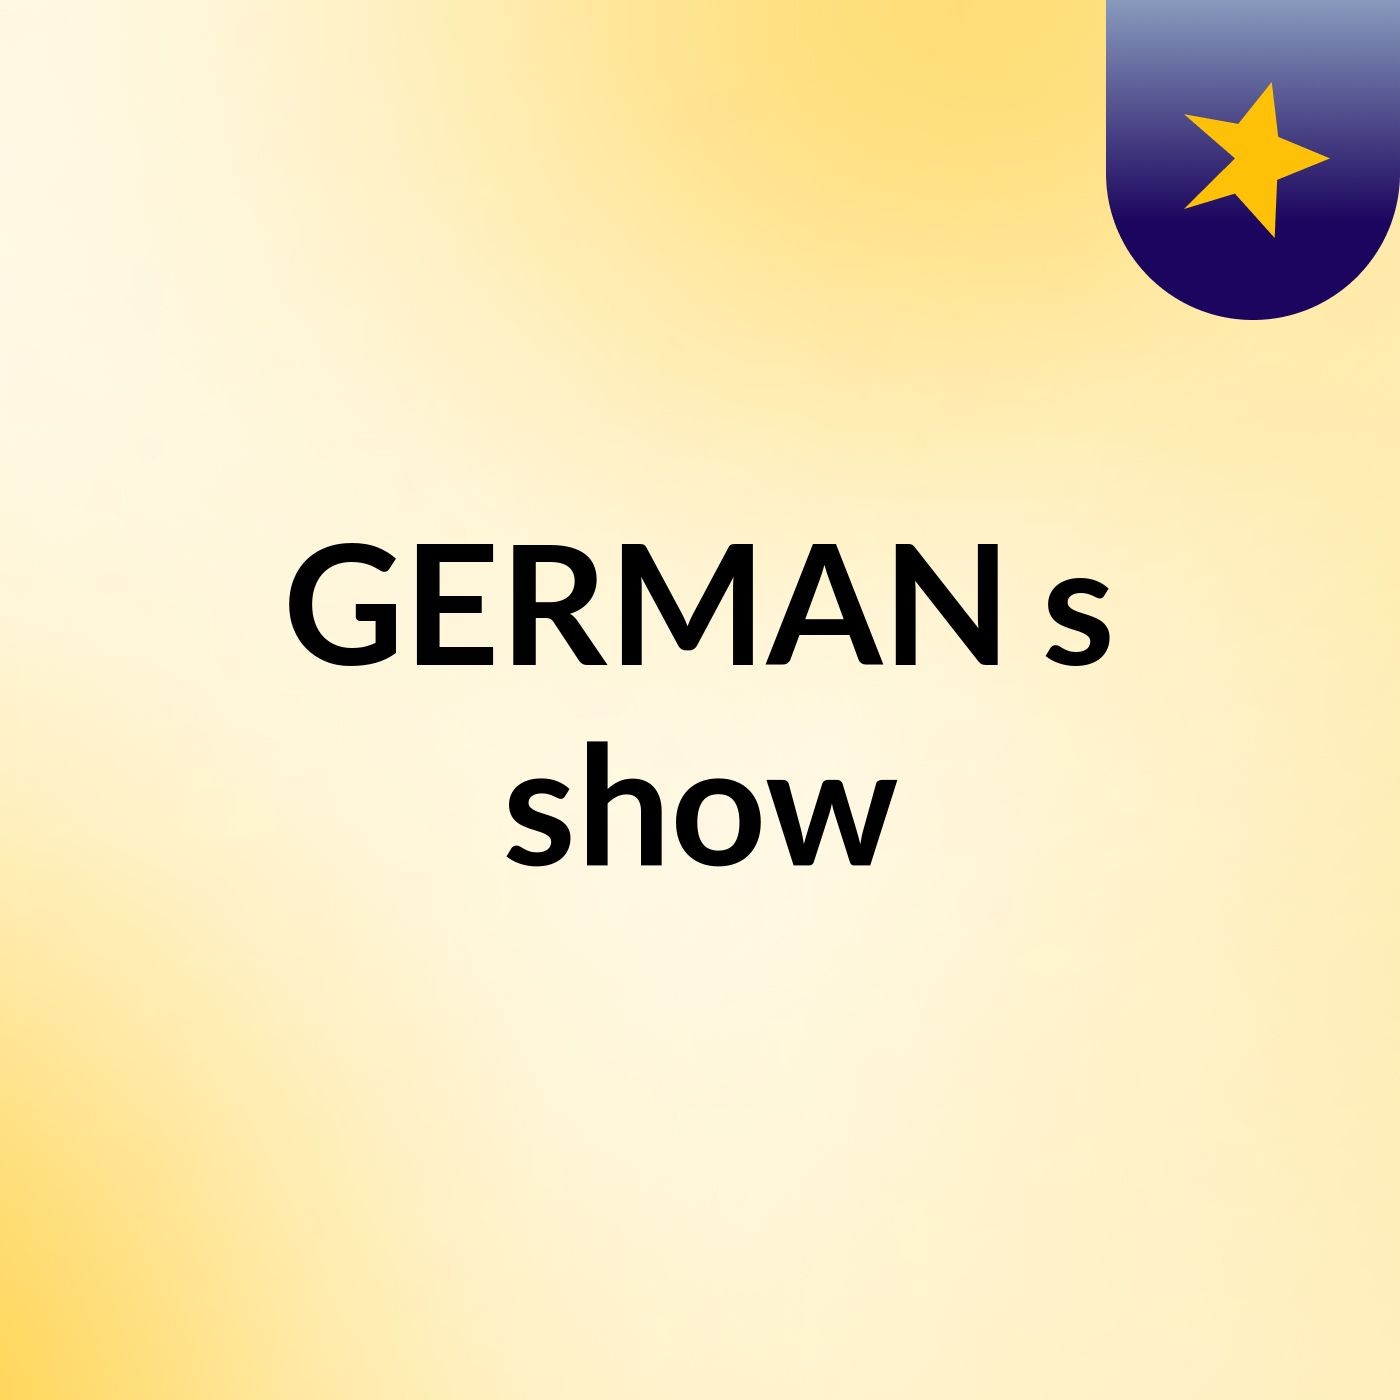 GERMAN's show